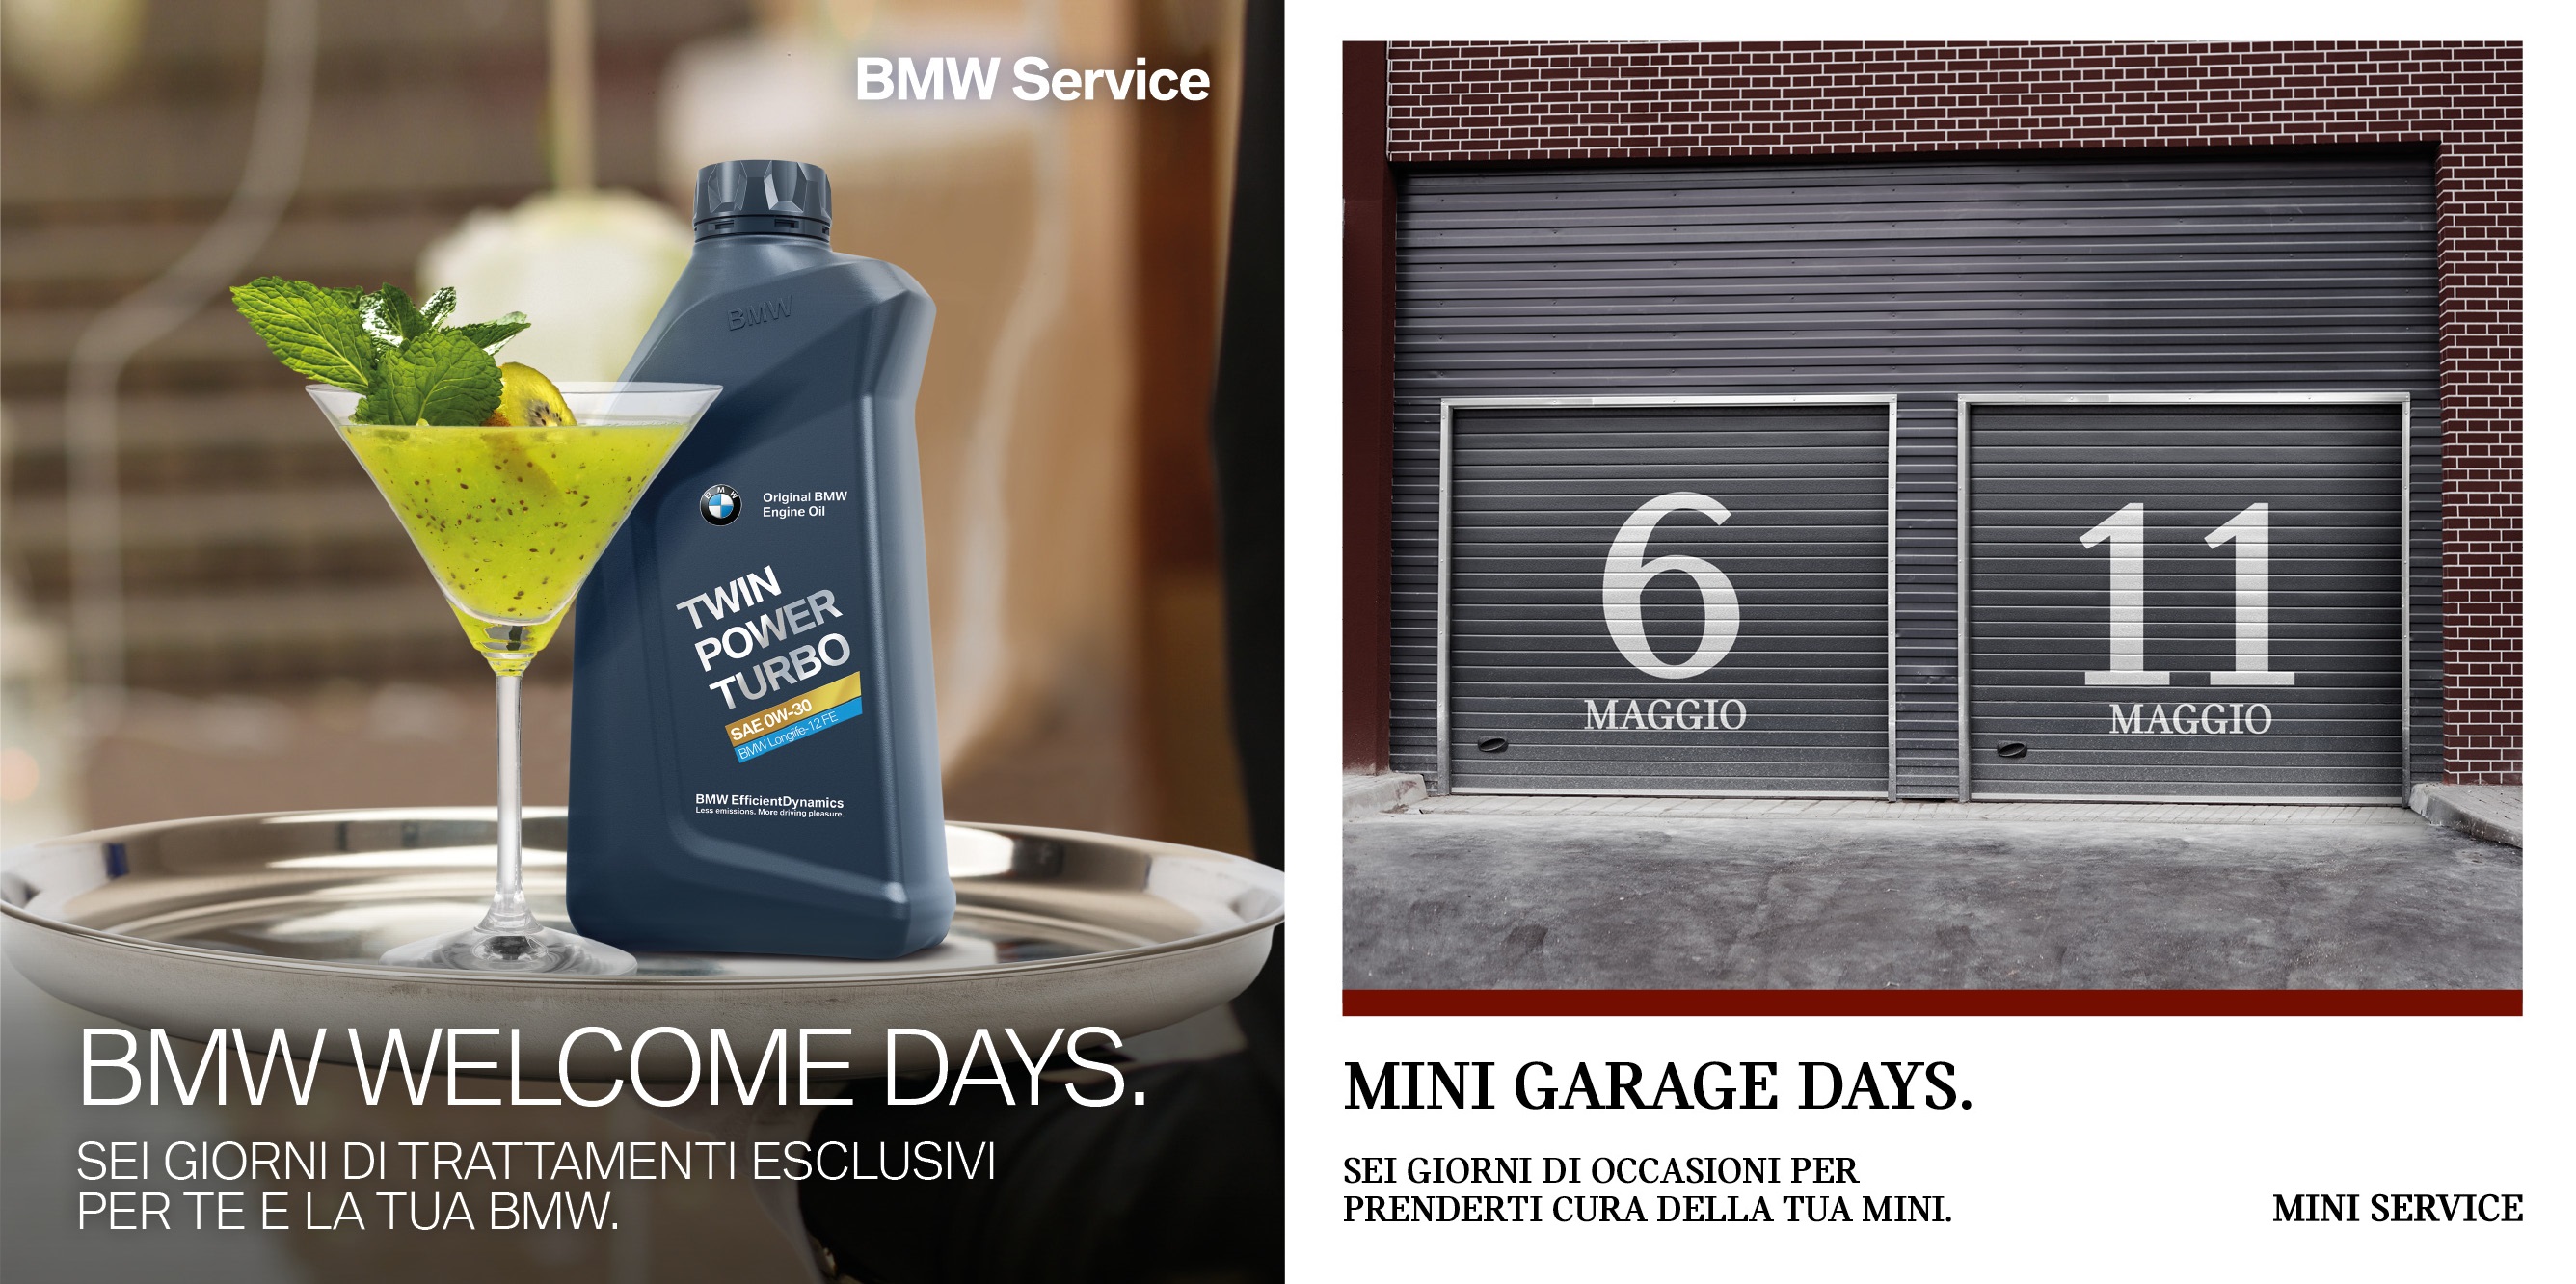 Dal 6 all'11 maggio prenditi cura della tua BMW e della tua MINI: la manutenzione conviene!